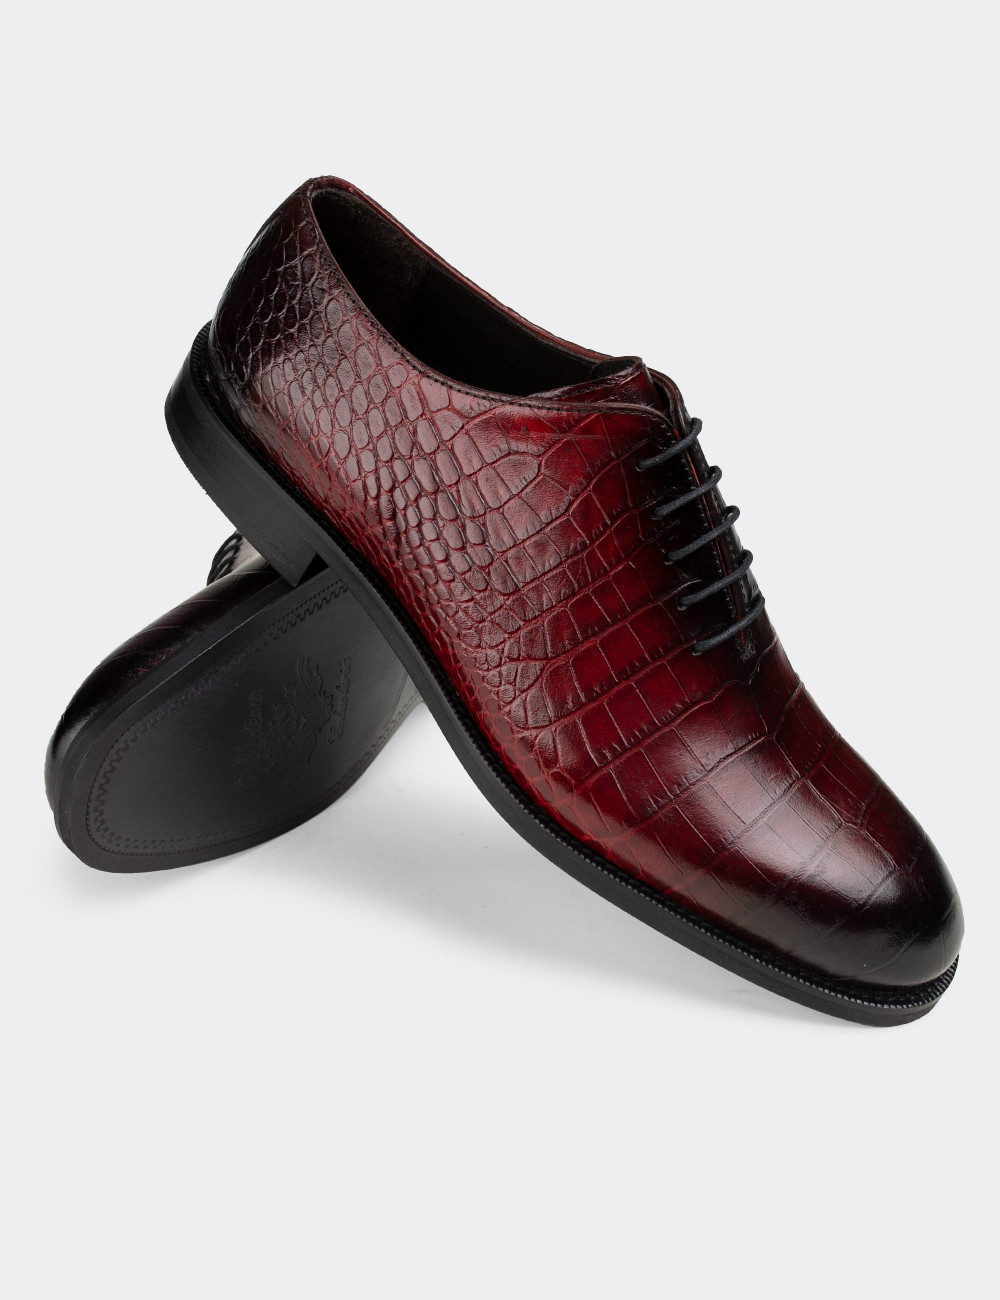 Hakiki Deri Bordo Kroko Klasik Erkek Ayakkabı - 01830MBRDN01